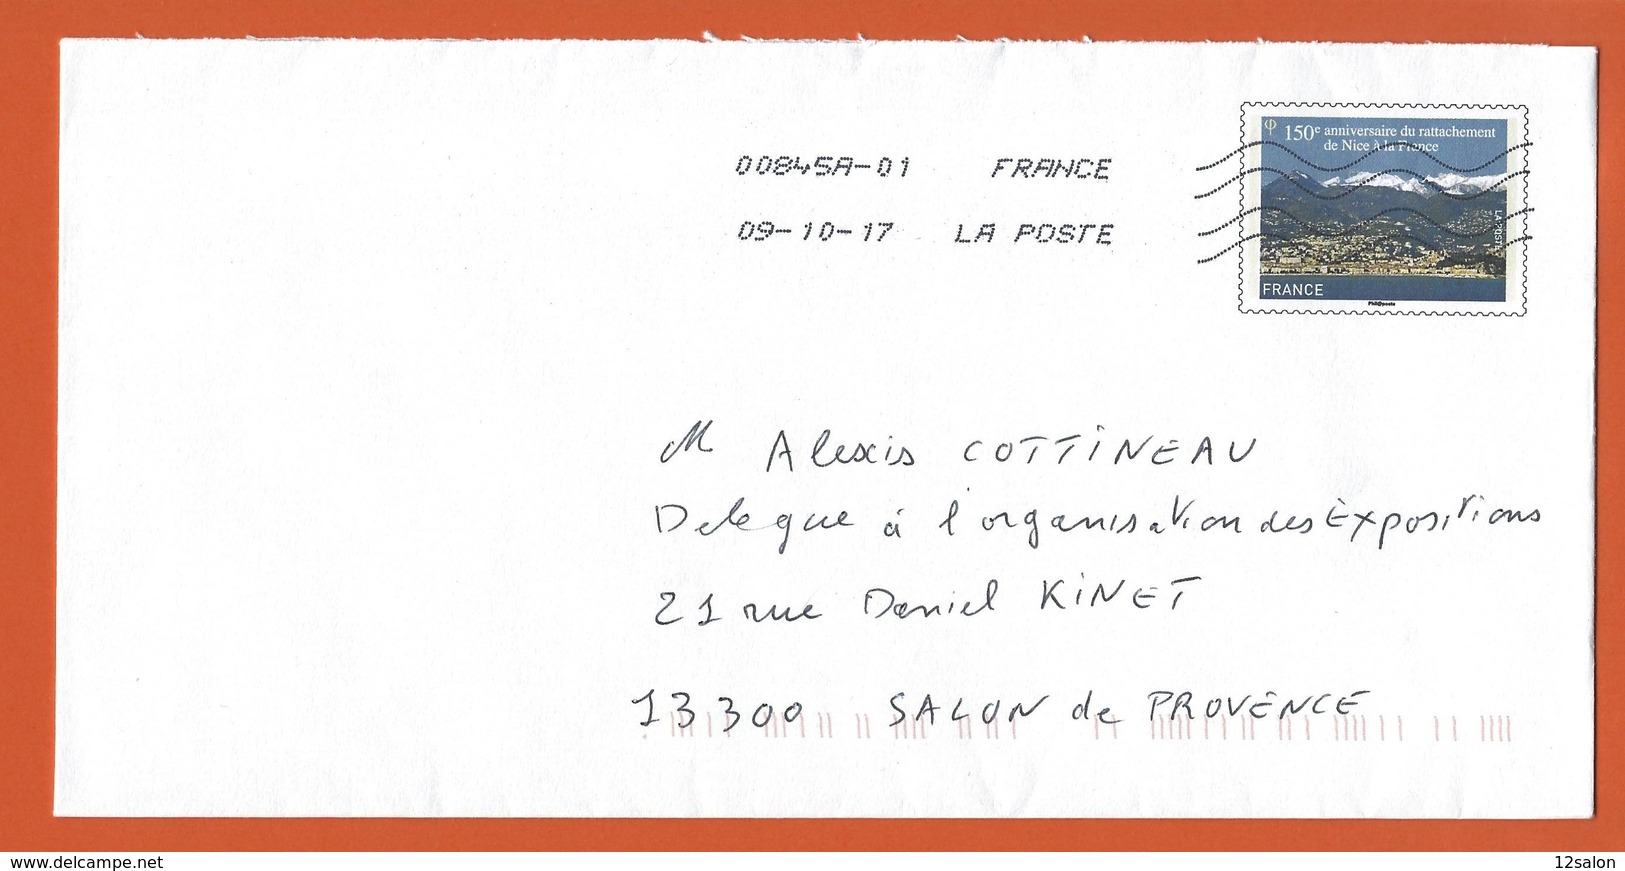 ENTIERS POSTAUX PRET A POSTER  Theme 150 ANNIVERSAIRE RATTACHEMENT DE NICE A LA FRANCE - Prêts-à-poster:  Autres (1995-...)